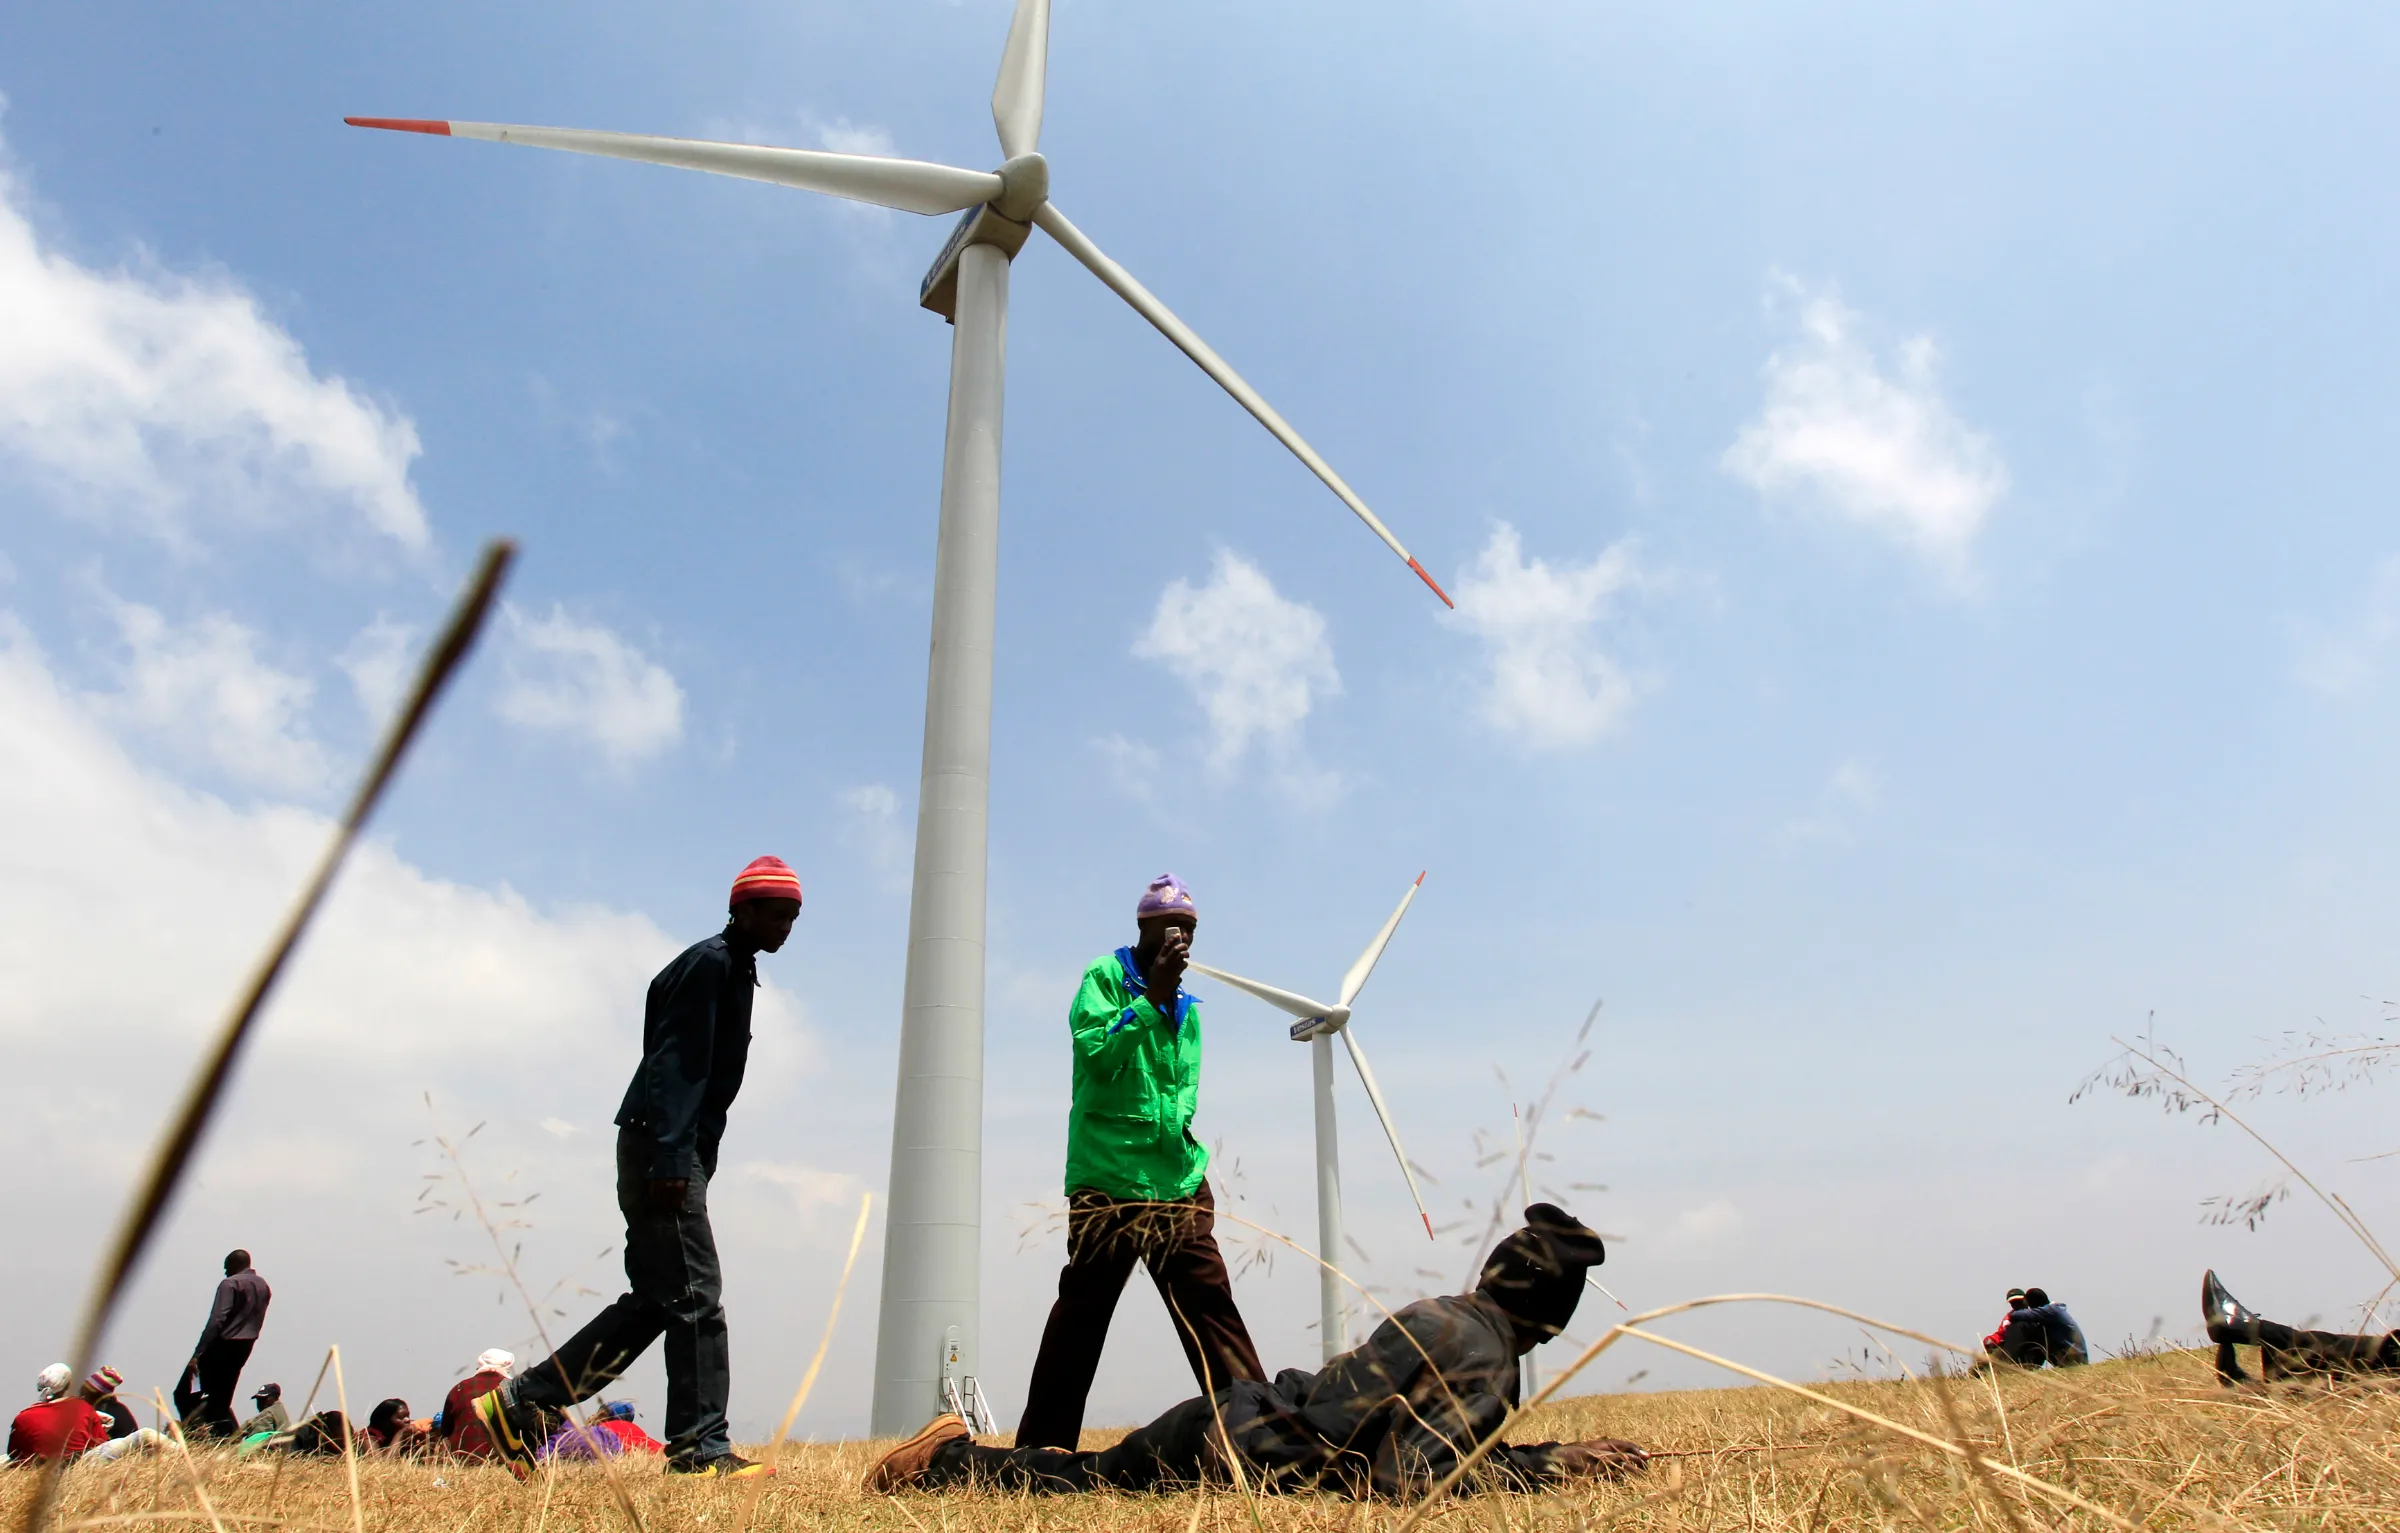 People walk near power-generating wind turbines in Ngong hills, in Nairobi, Kenya, September 8, 2010